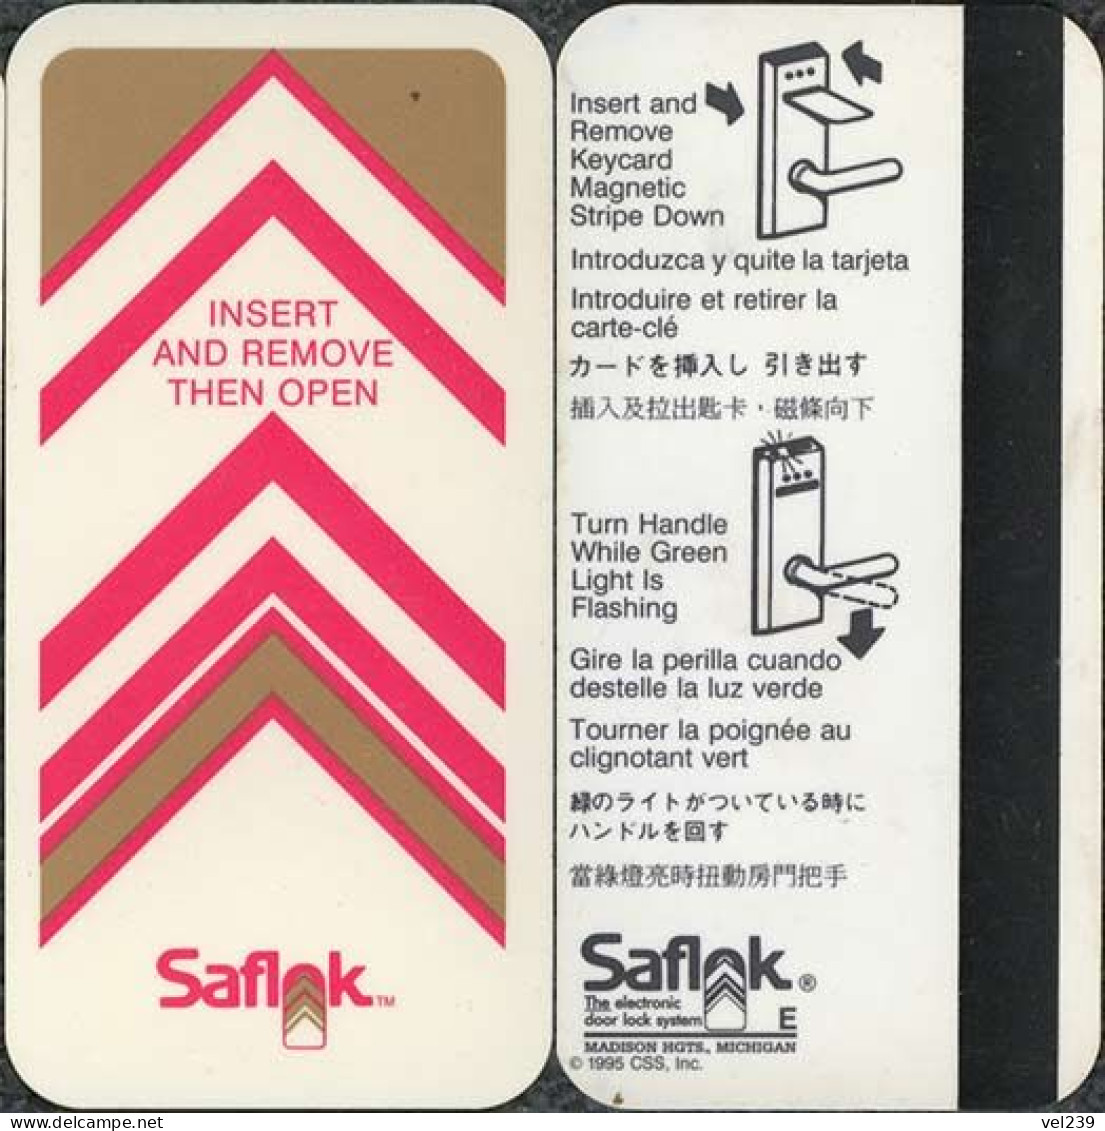 Saflock - Hotelkarten